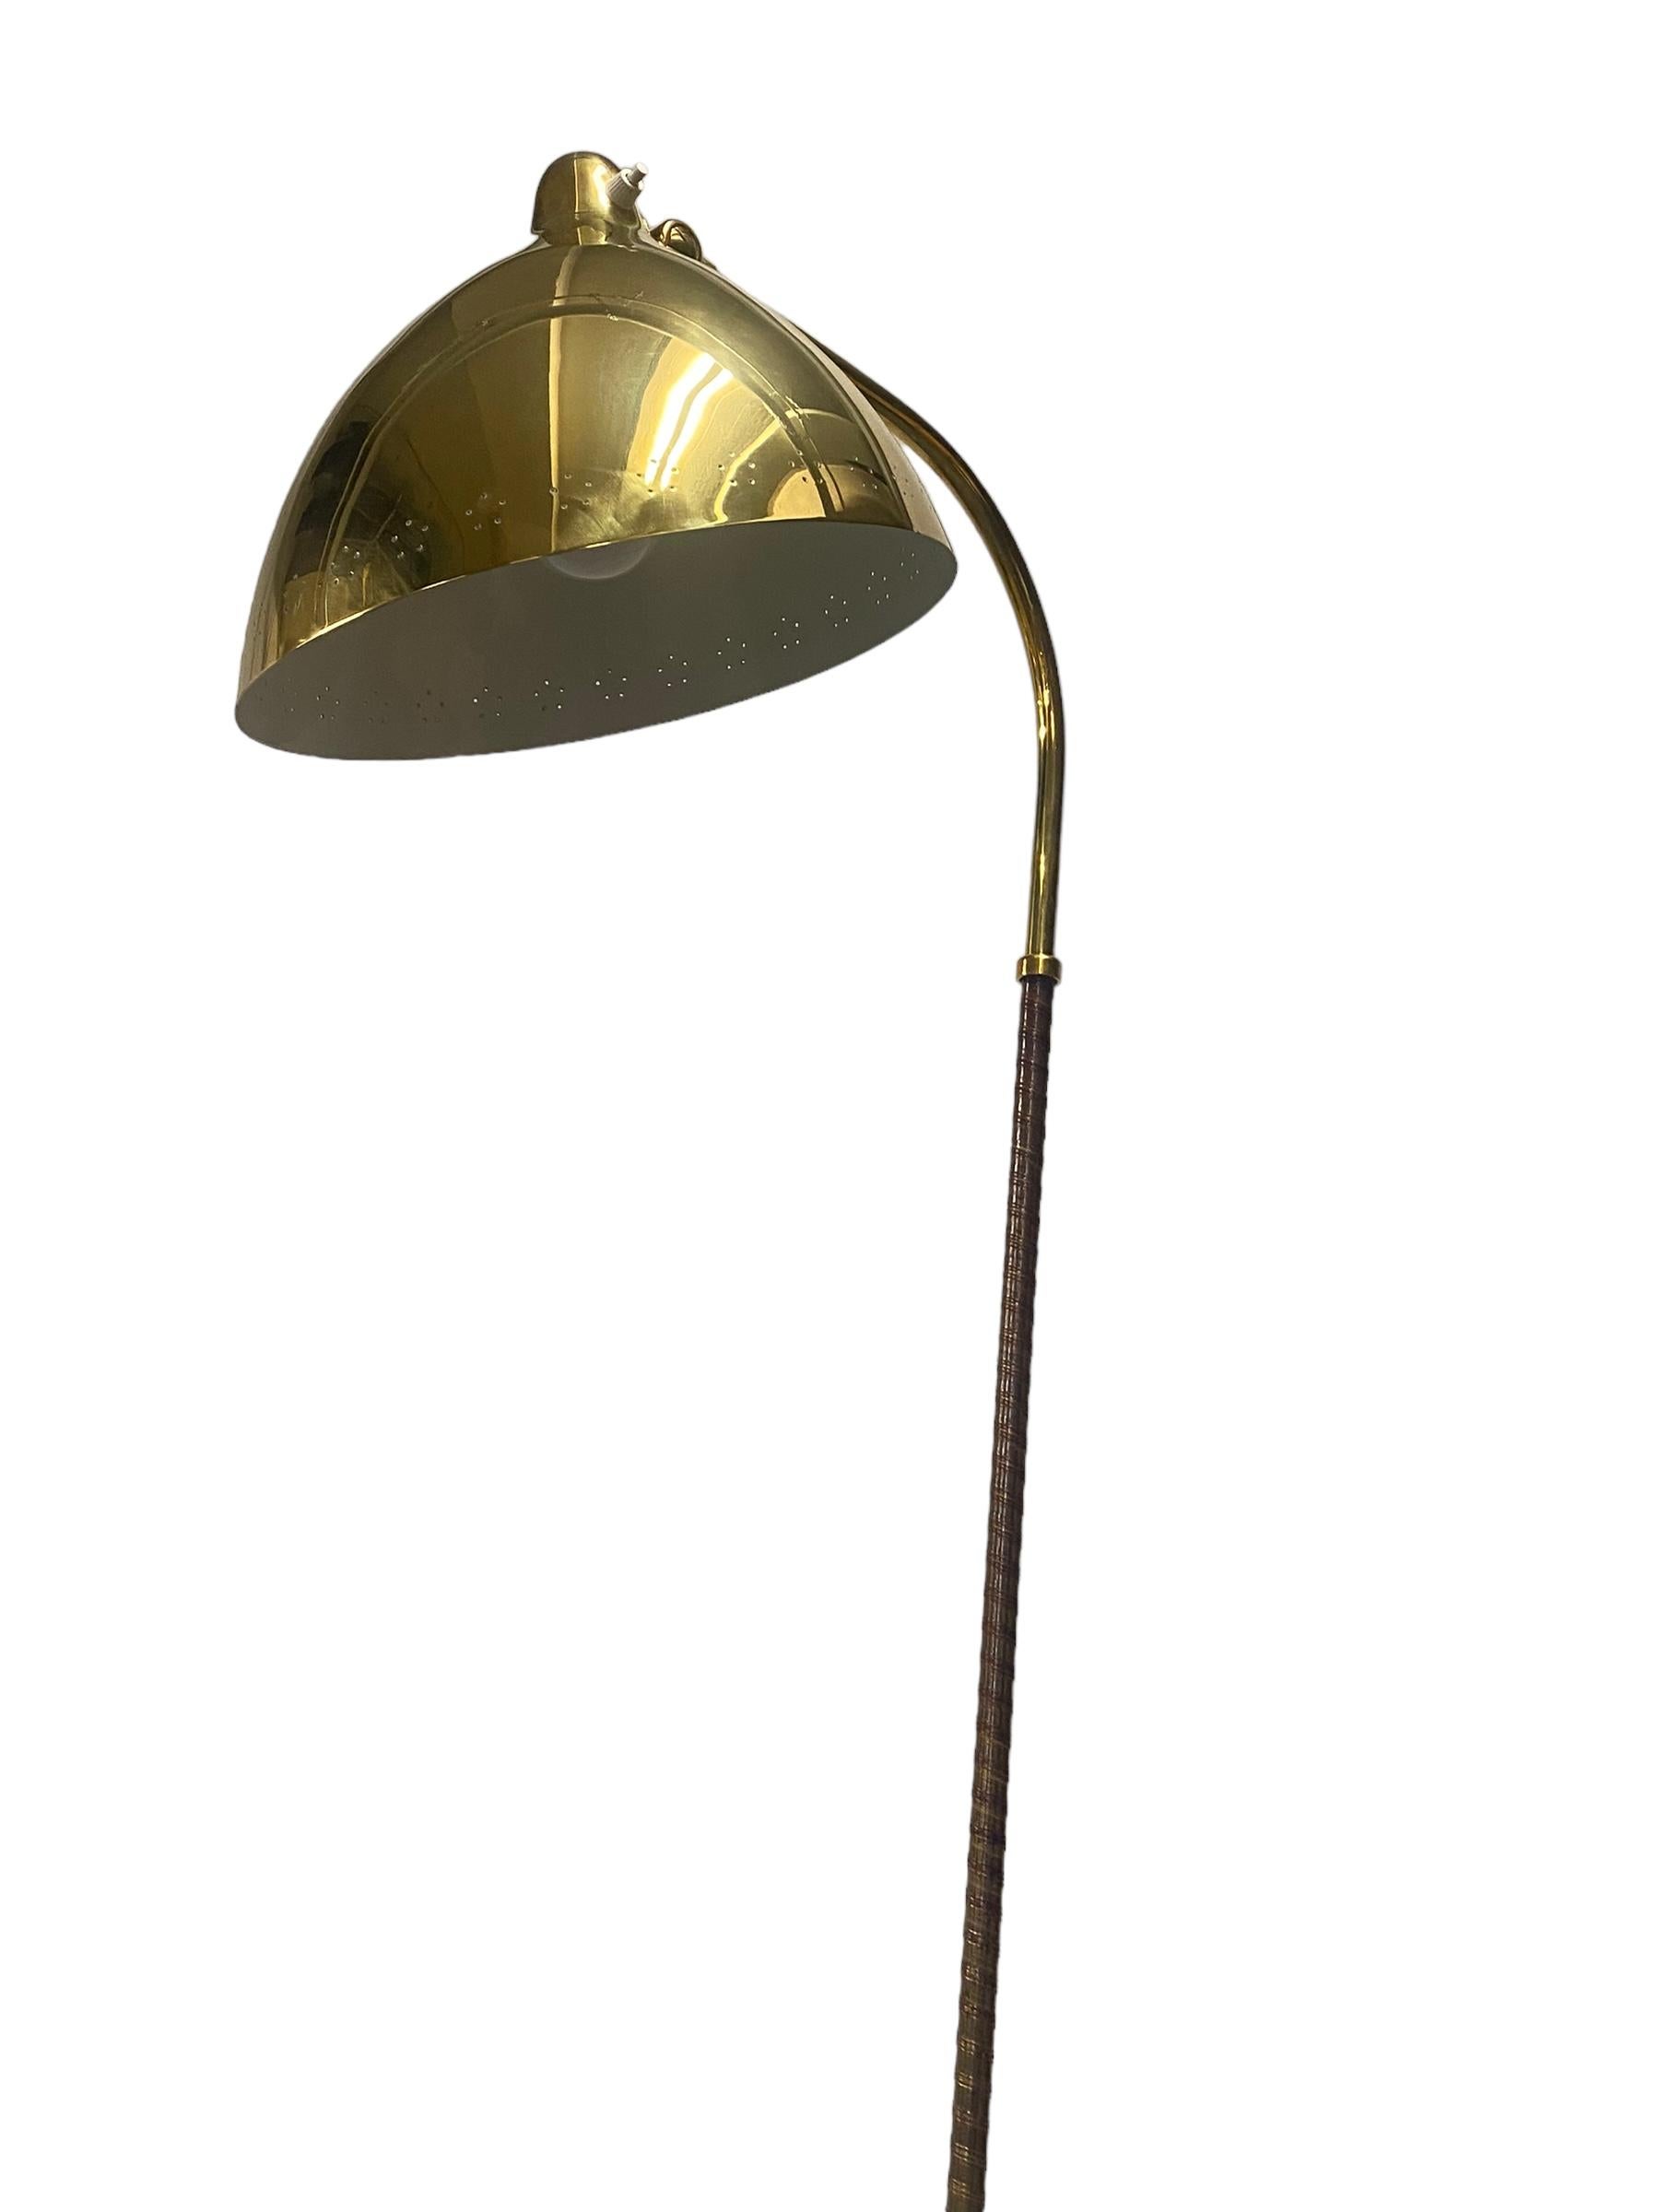 Brass Lisa Johansson-Pape, Floor lamp model 30-062, Orno For Sale